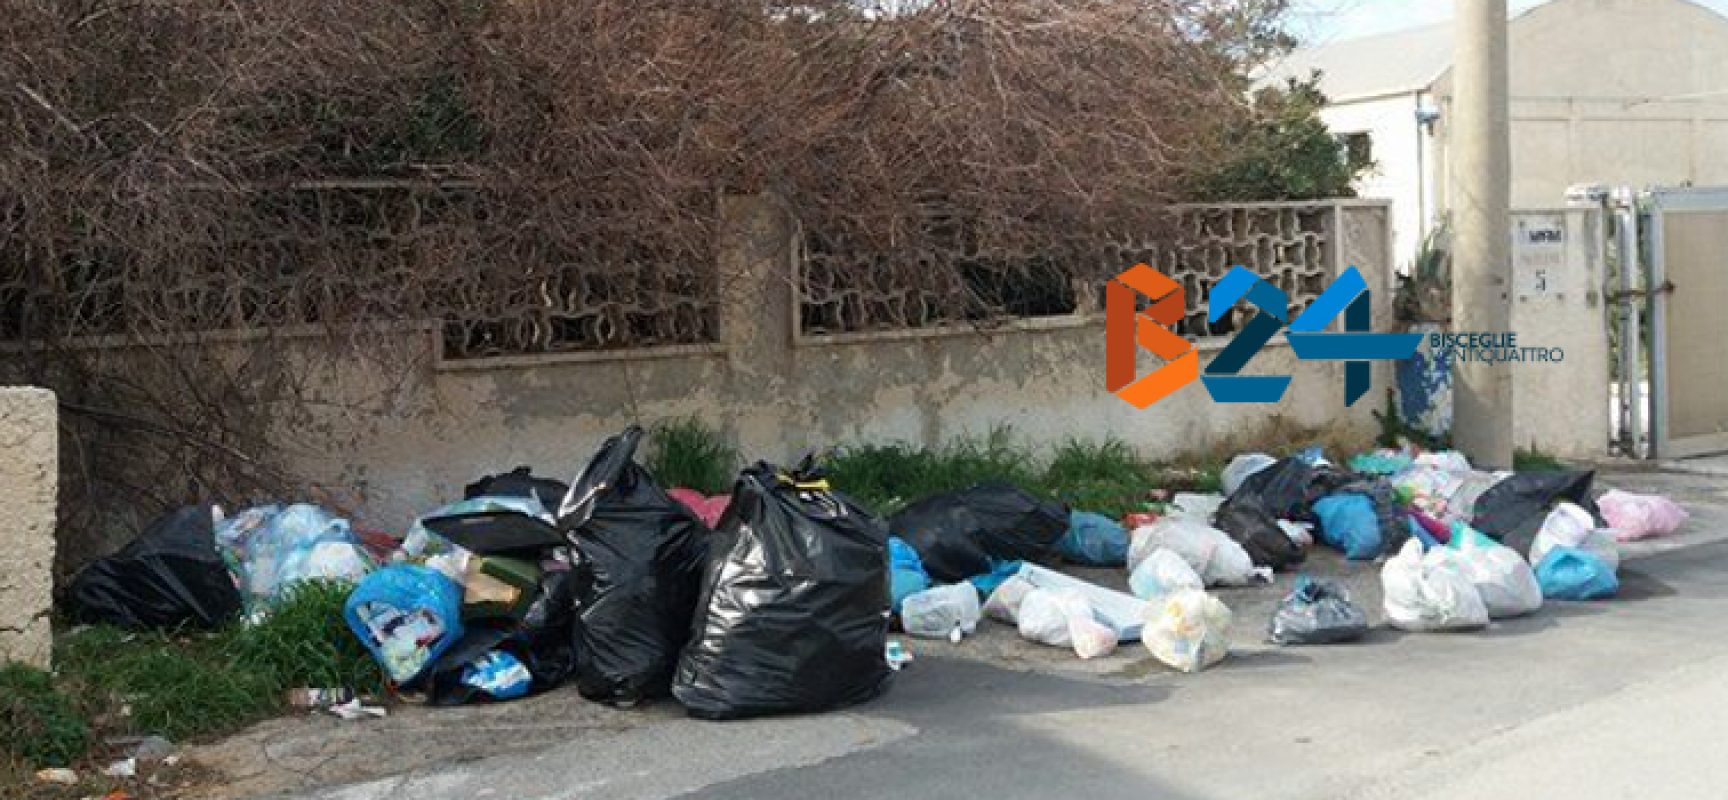 Ancora rifiuti abbandonati per strada: zona BiMarmi invasa da sacchetti di immondizia / FOTO